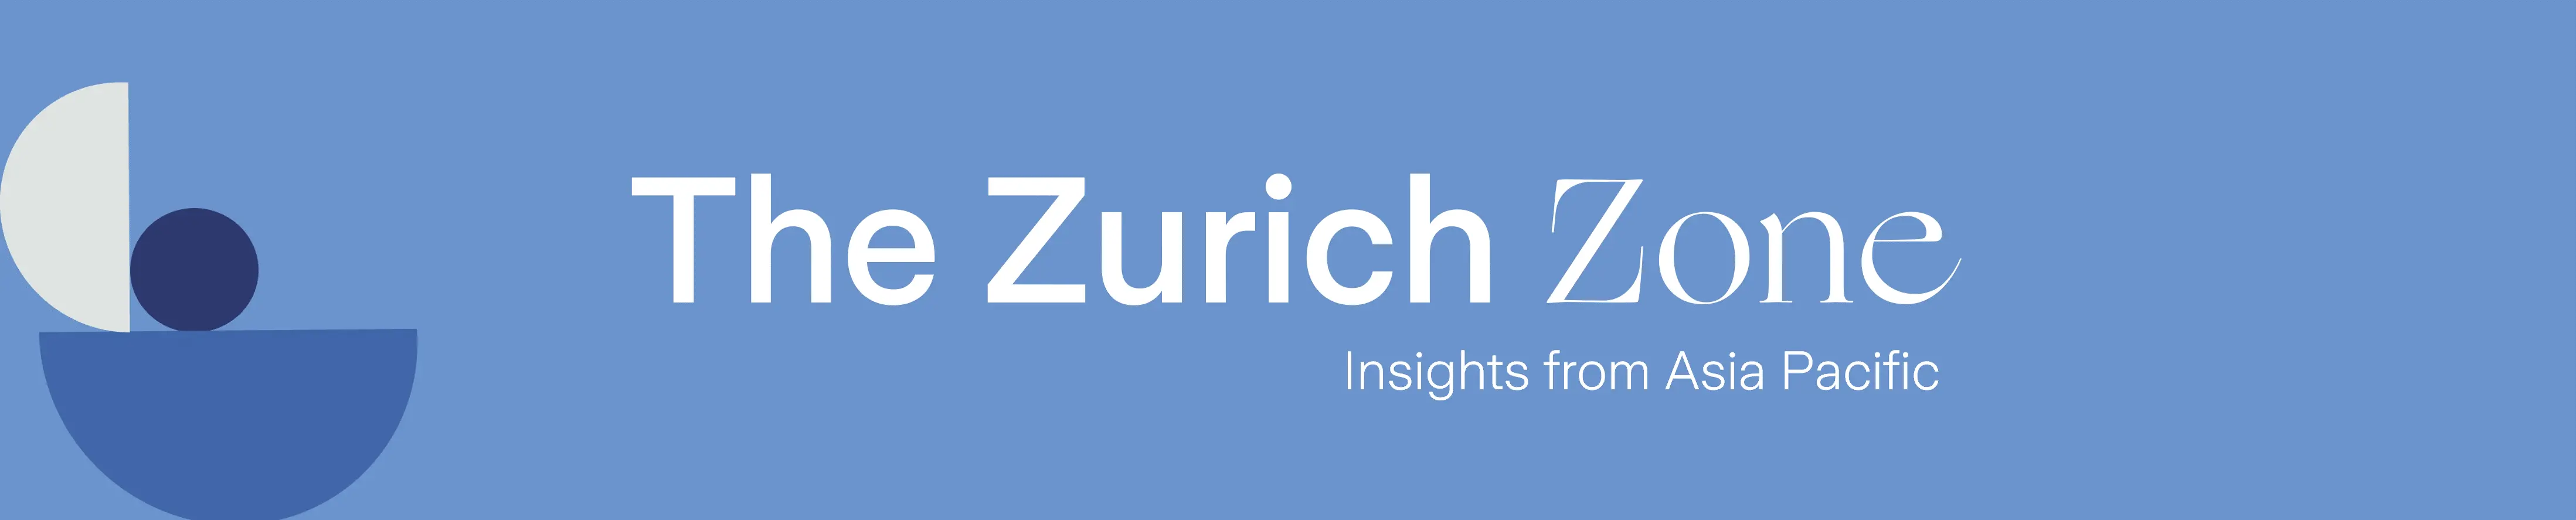 The Zurich Zone